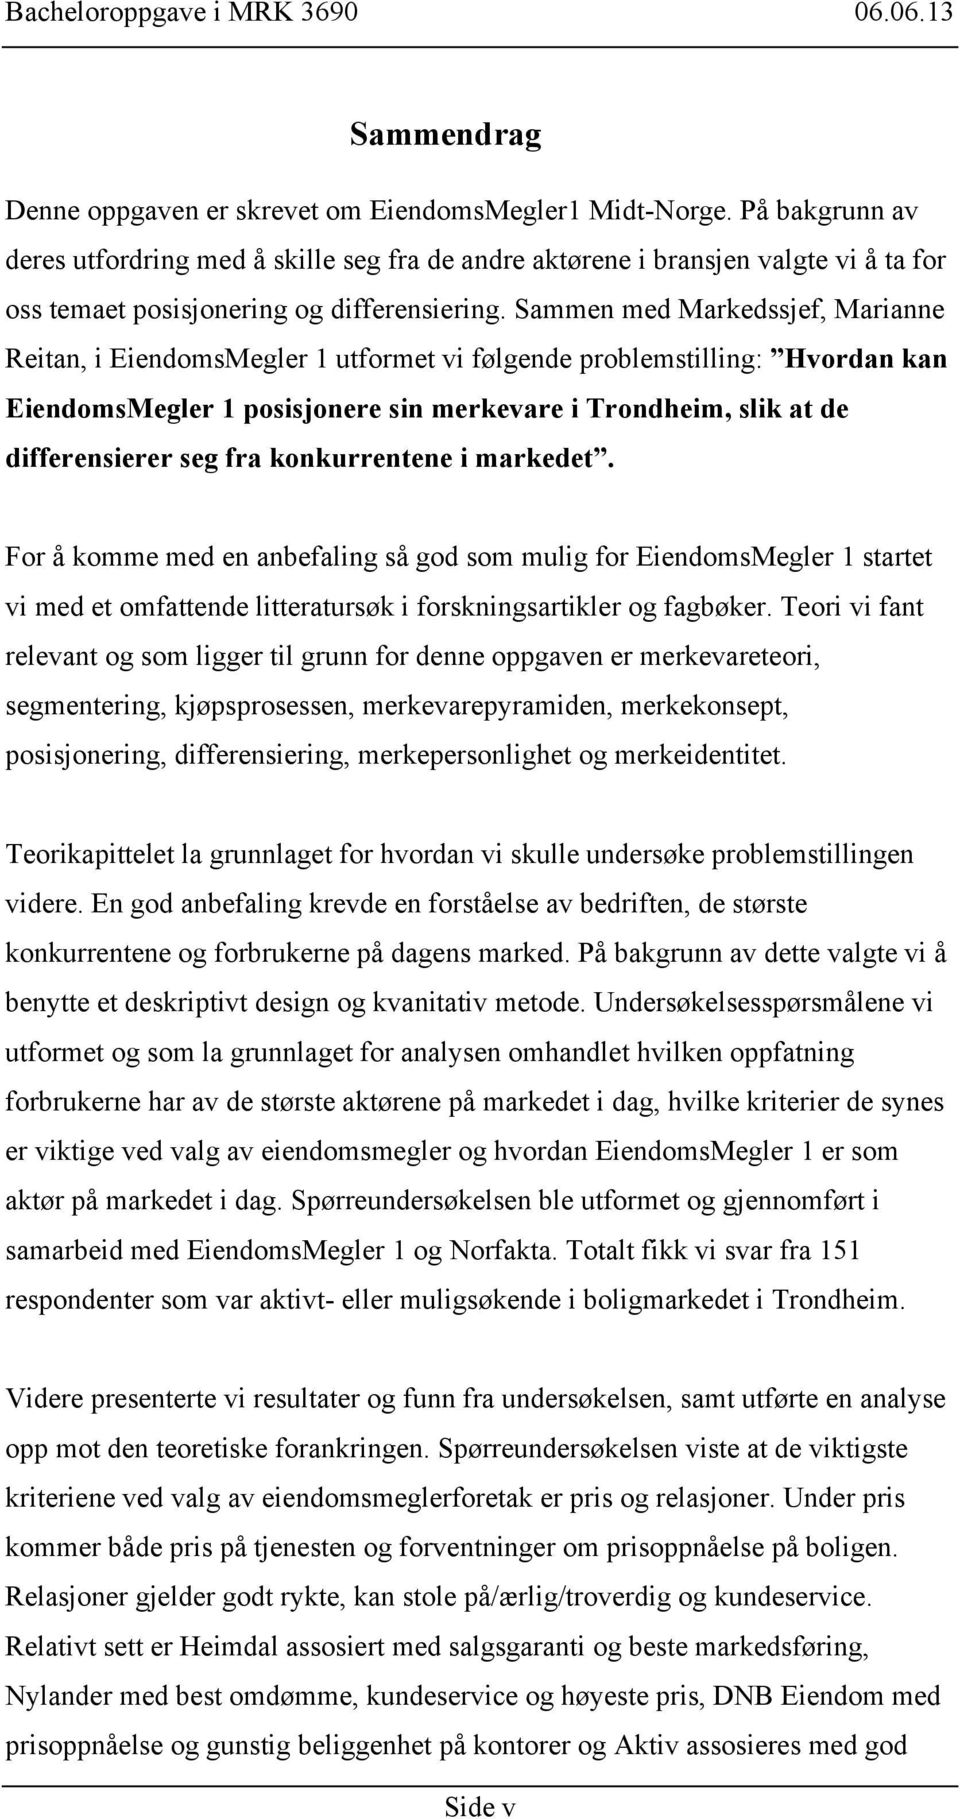 Sammen med Markedssjef, Marianne Reitan, i EiendomsMegler 1 utformet vi følgende problemstilling: Hvordan kan EiendomsMegler 1 posisjonere sin merkevare i Trondheim, slik at de differensierer seg fra